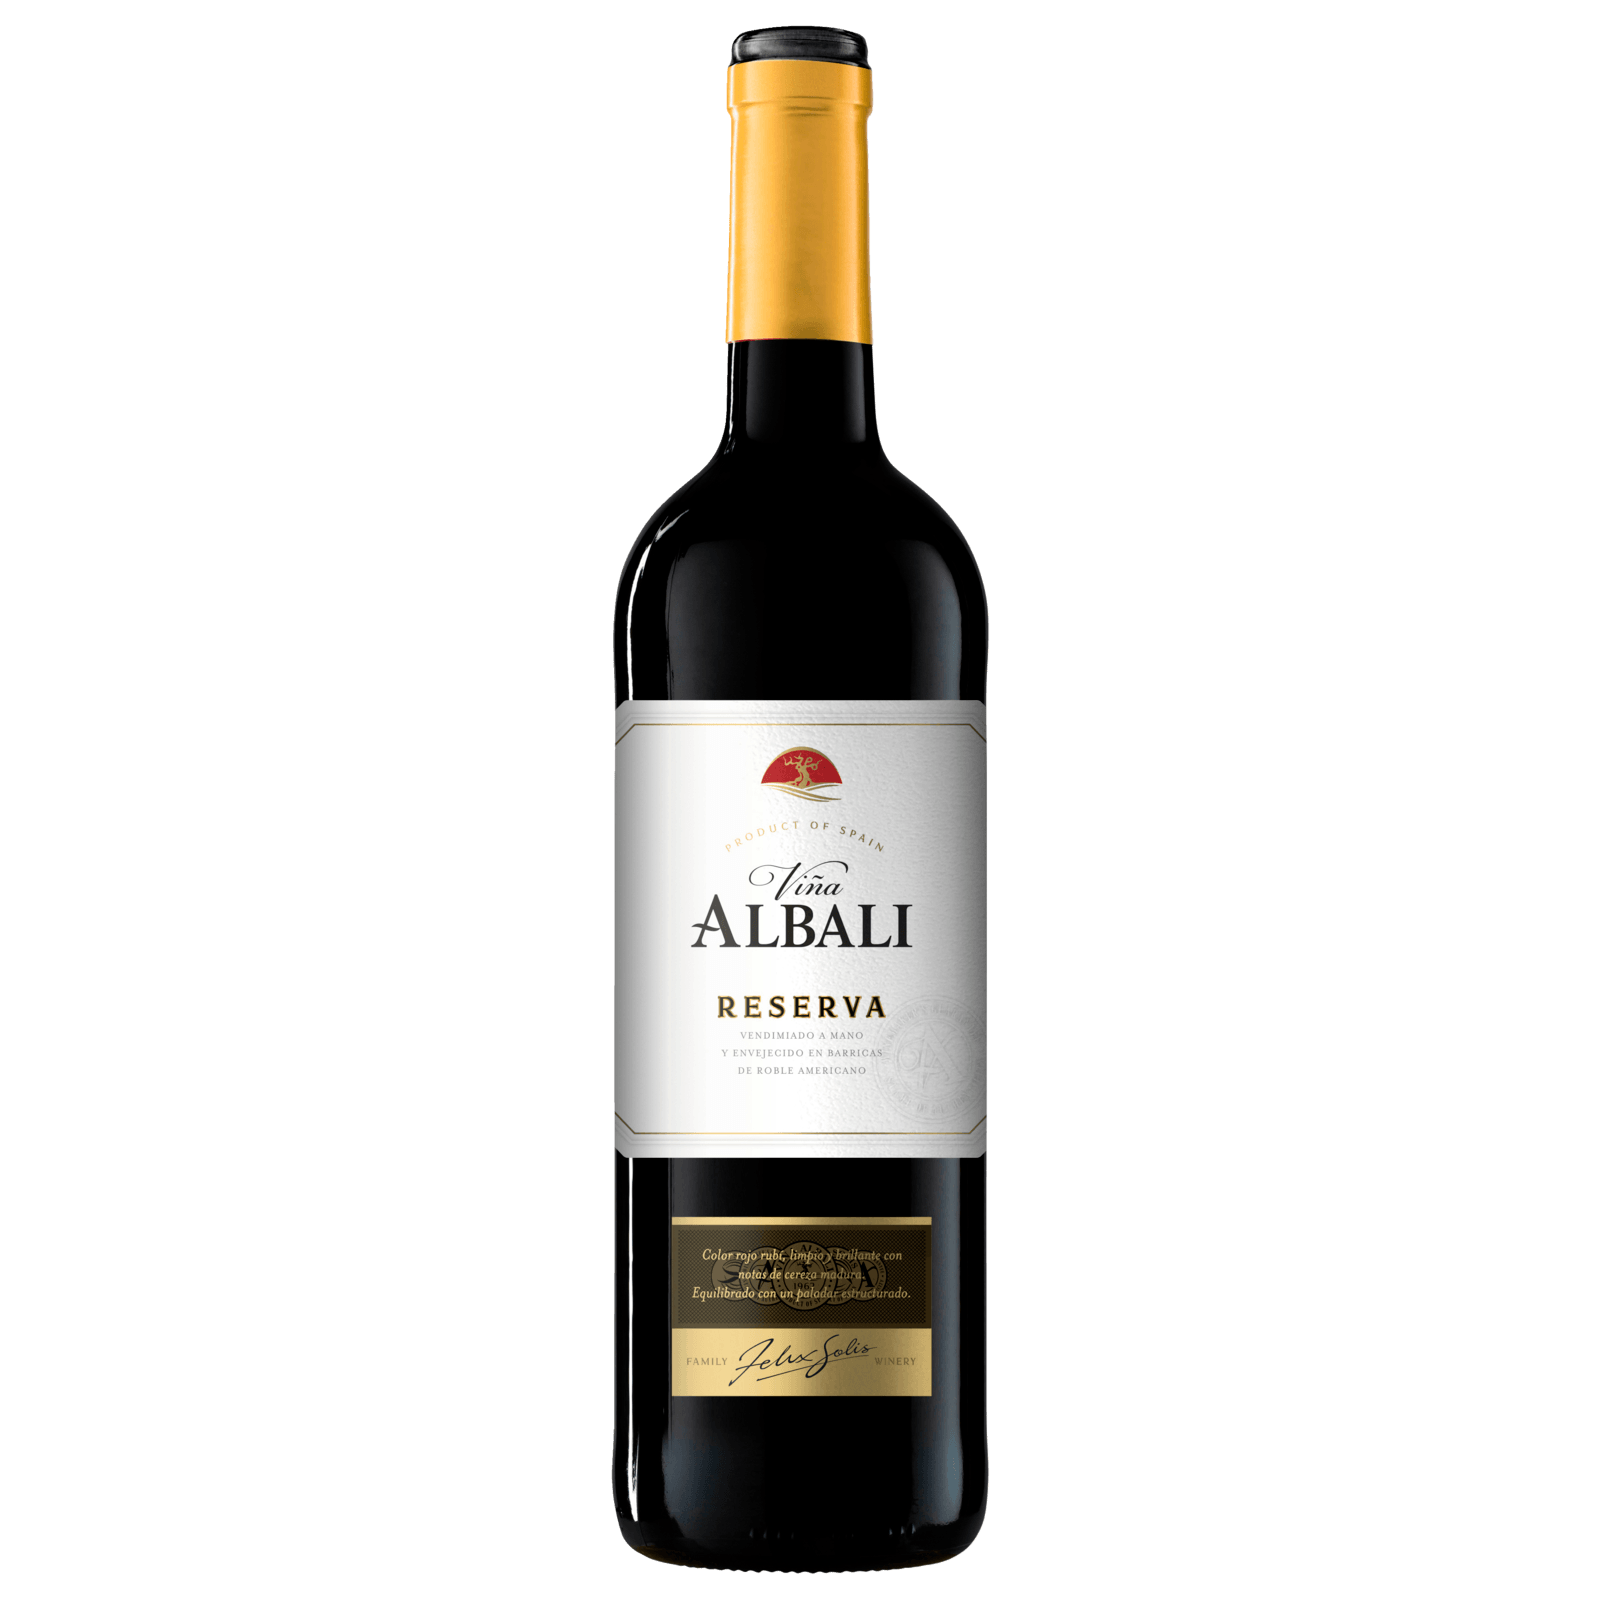 Cepa Lebrel Rioja Reserva DOCa trocken, Rotwein 2017 für 4,99€ von Lidl